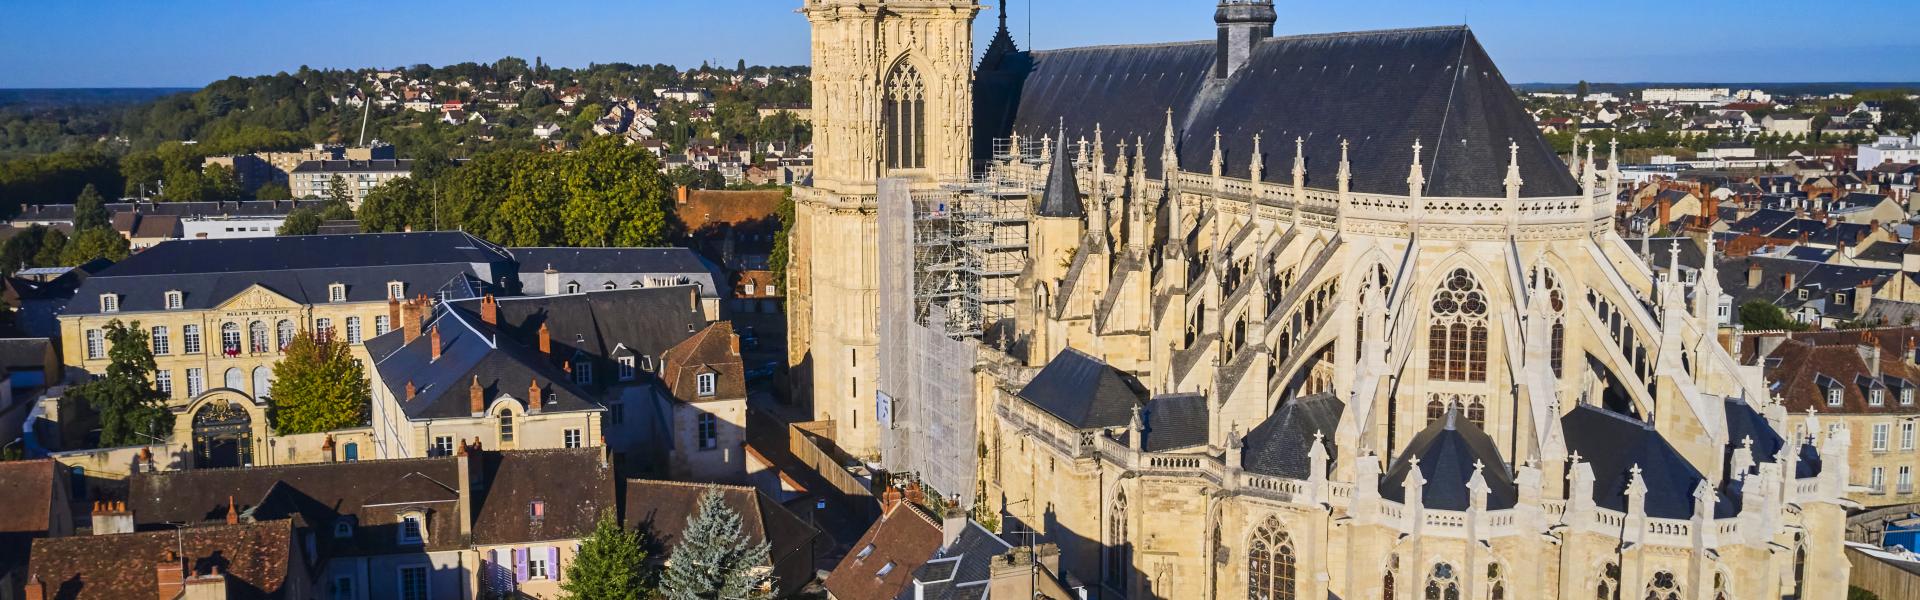 France, Nièvre (58), Nevers, Saint-Cyr-et-Sainte-Julitte cathedral on the way to Saint-Jacques de Compostelle, Loire valley